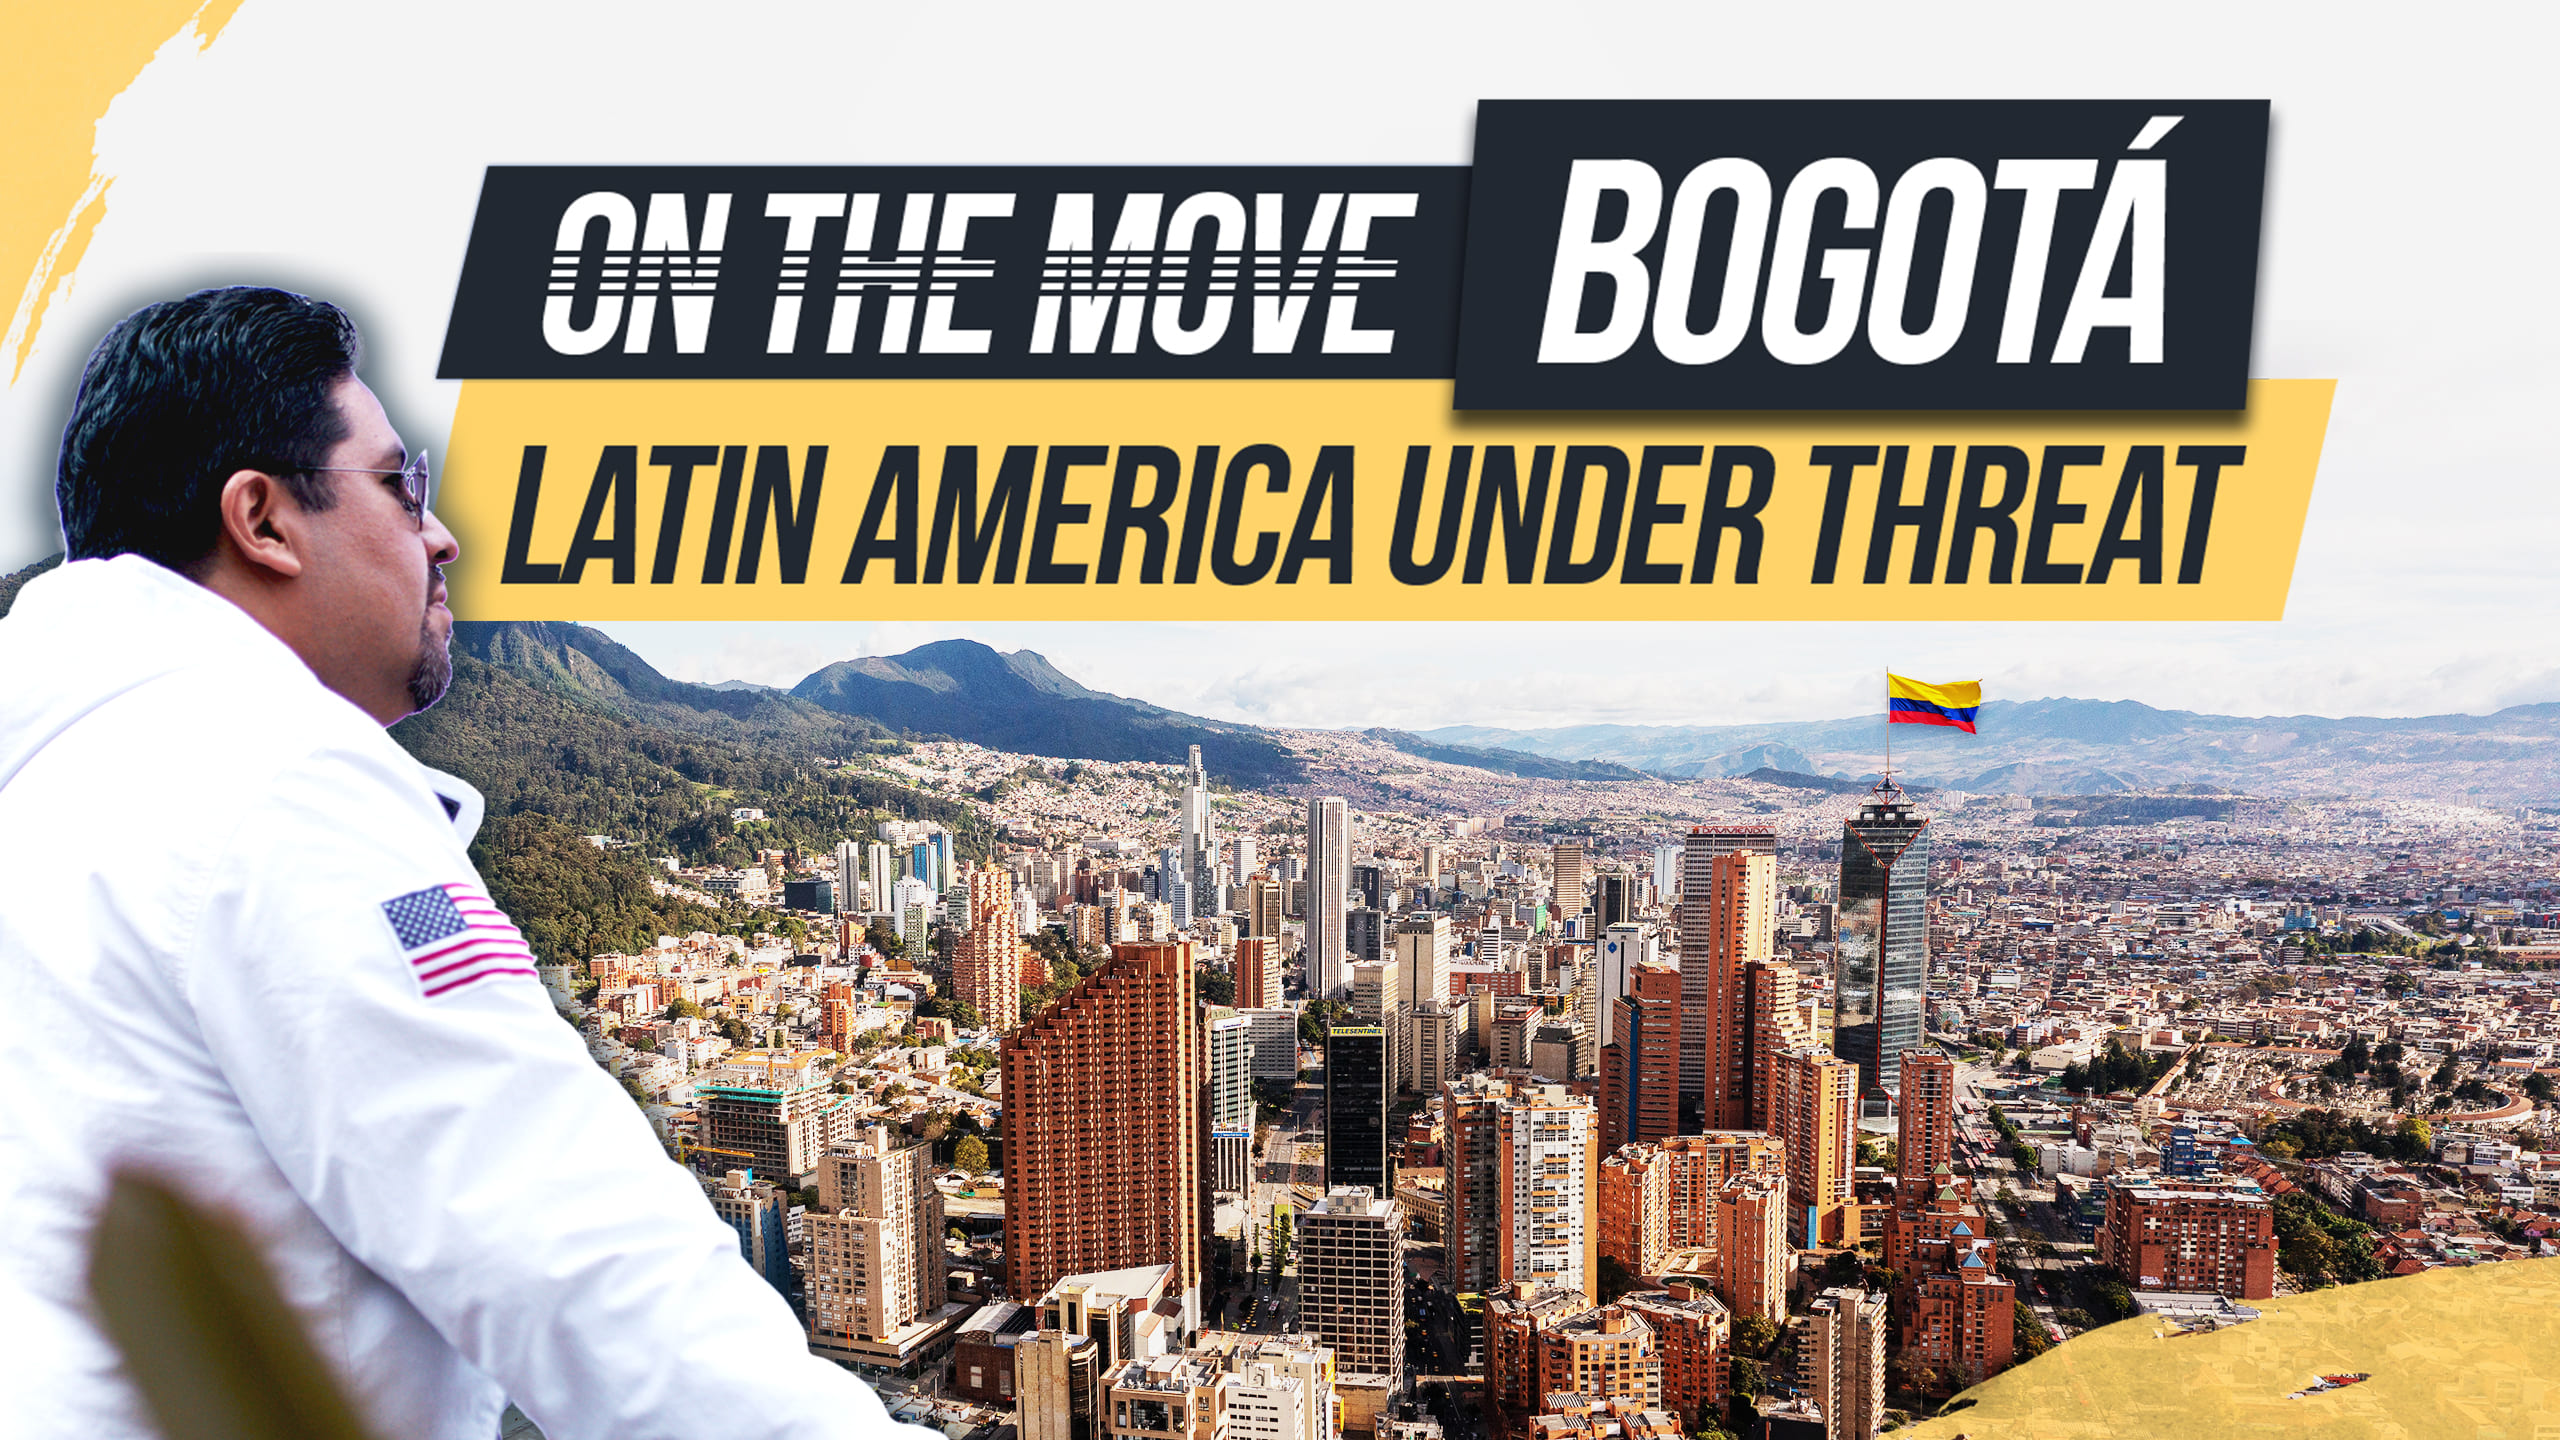 Latin America Under Threat | OTM EP. 04 Bogotá